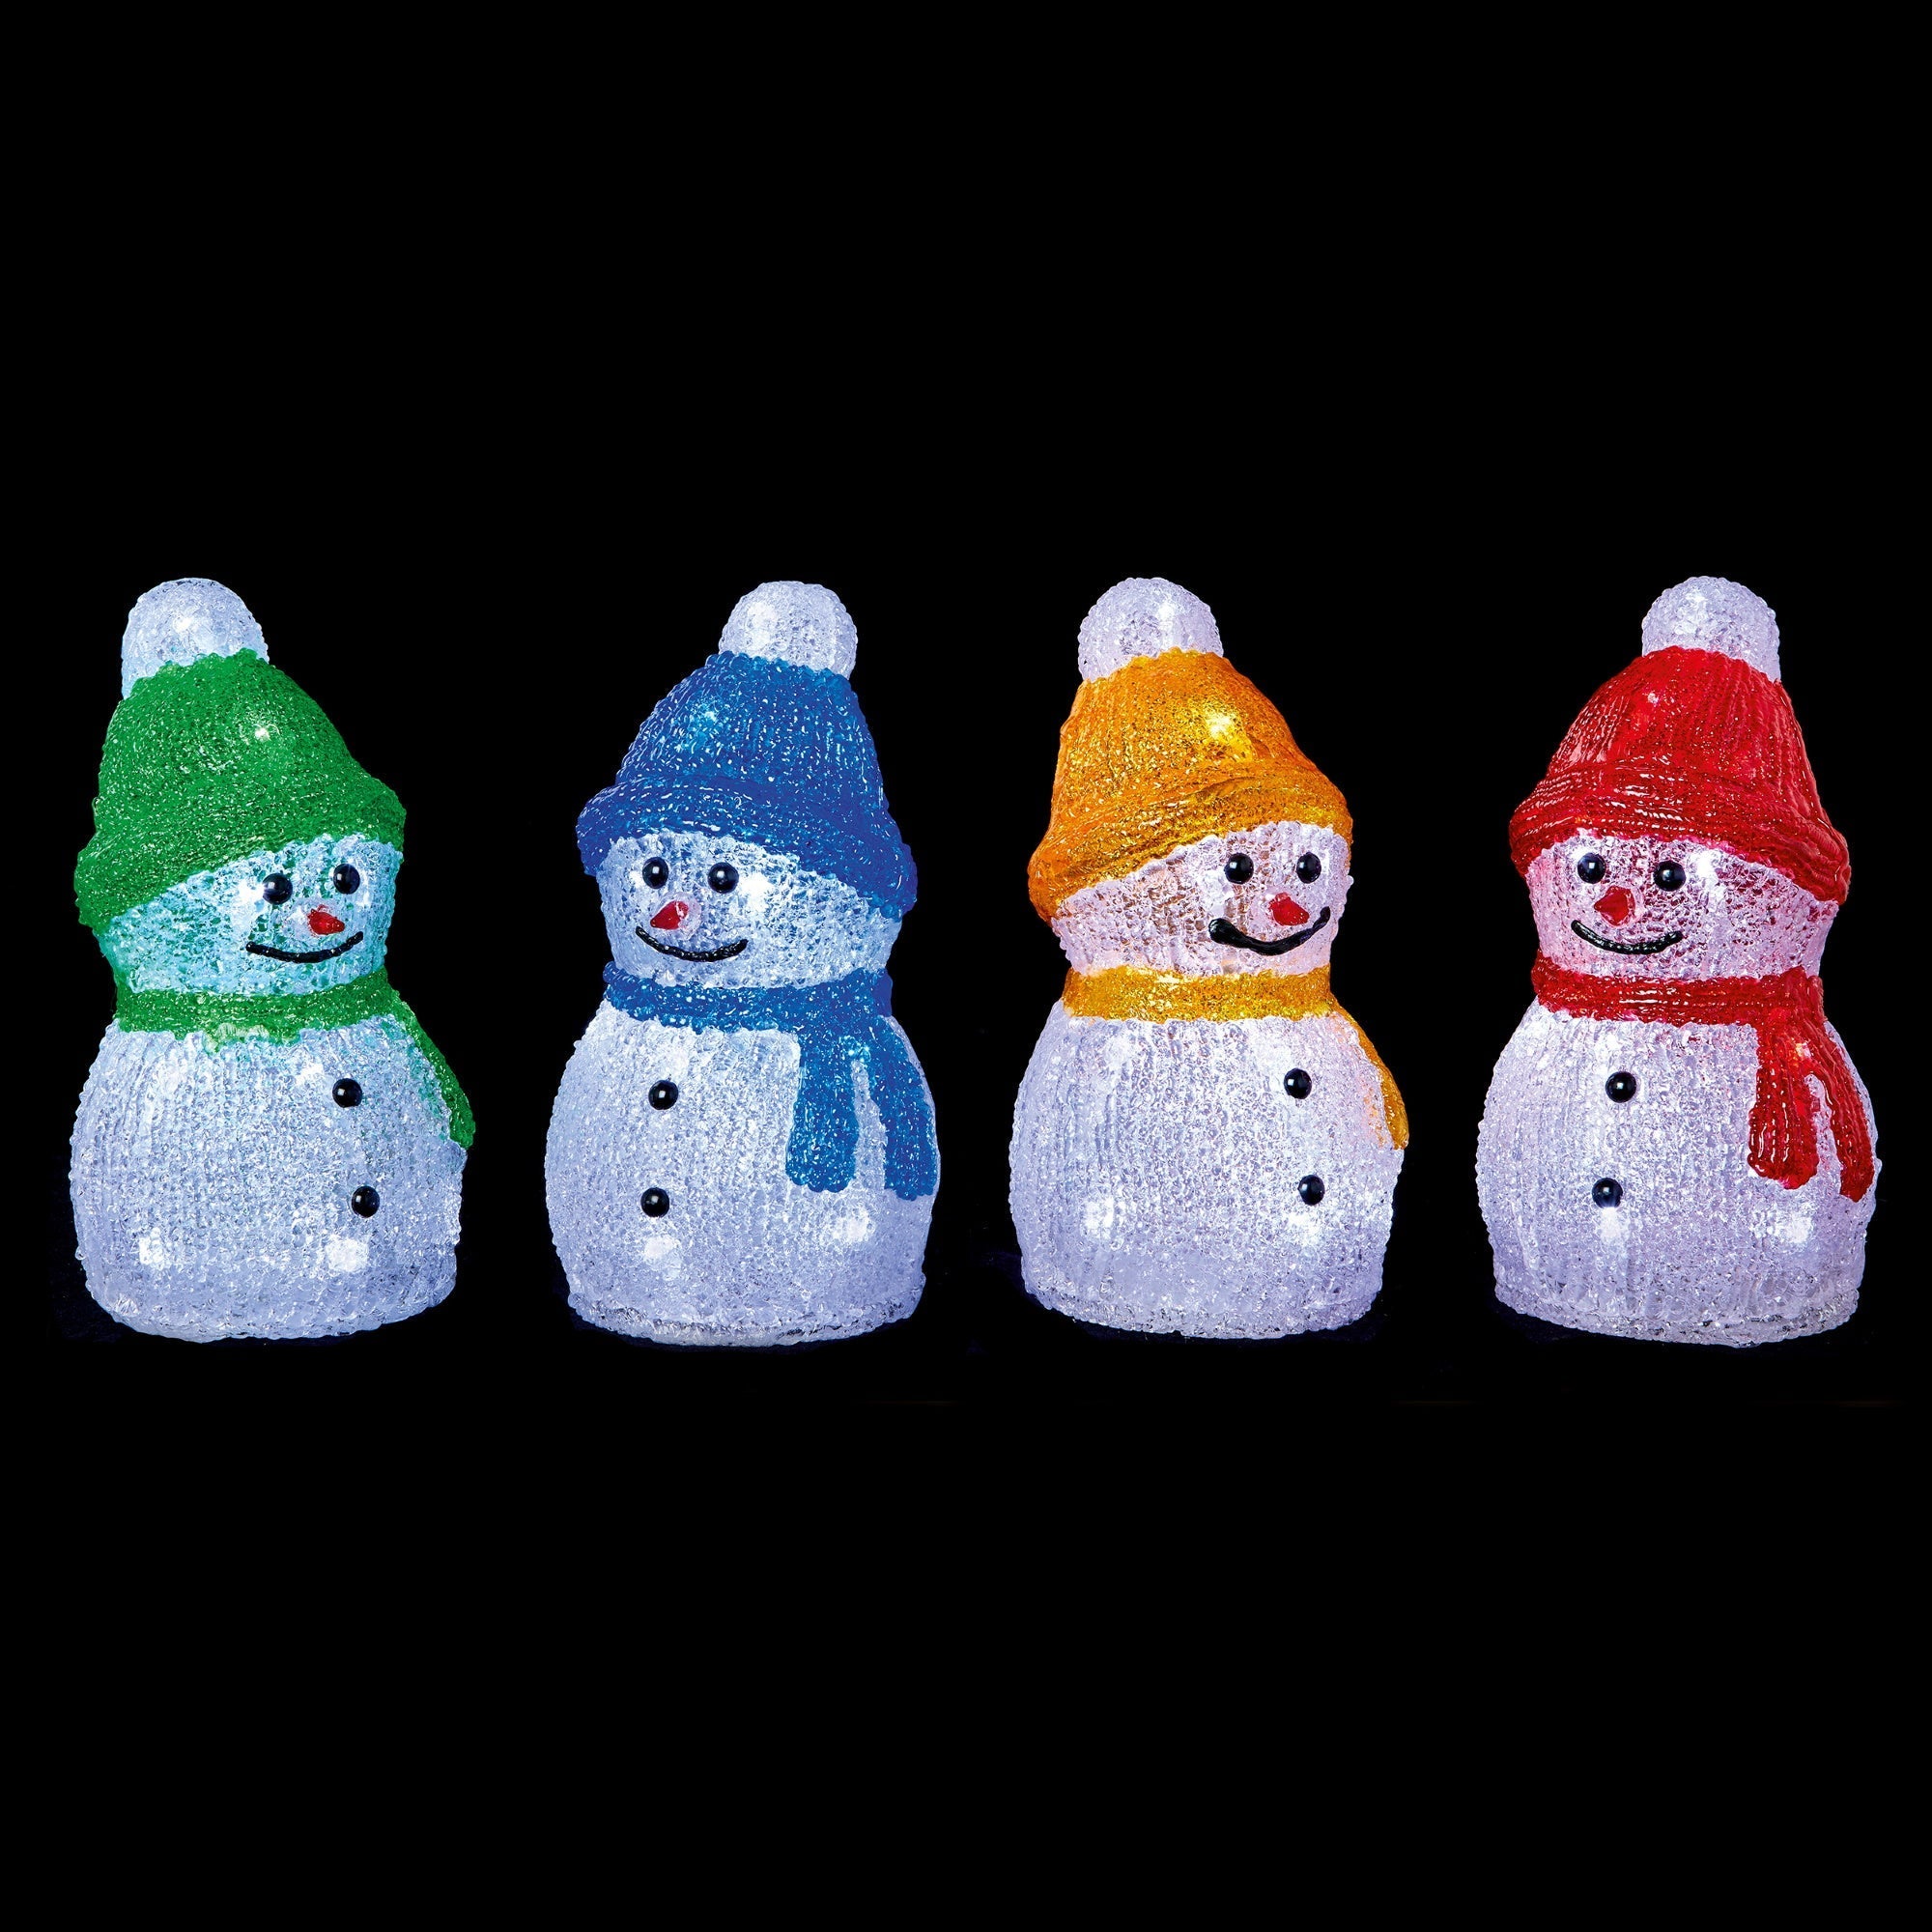 Premier LB201178P B/O Acrylic Snowman 23cm - Various Colours - Premium Light Up Decorations from Premier Decorations - Just $16.99! Shop now at W Hurst & Son (IW) Ltd